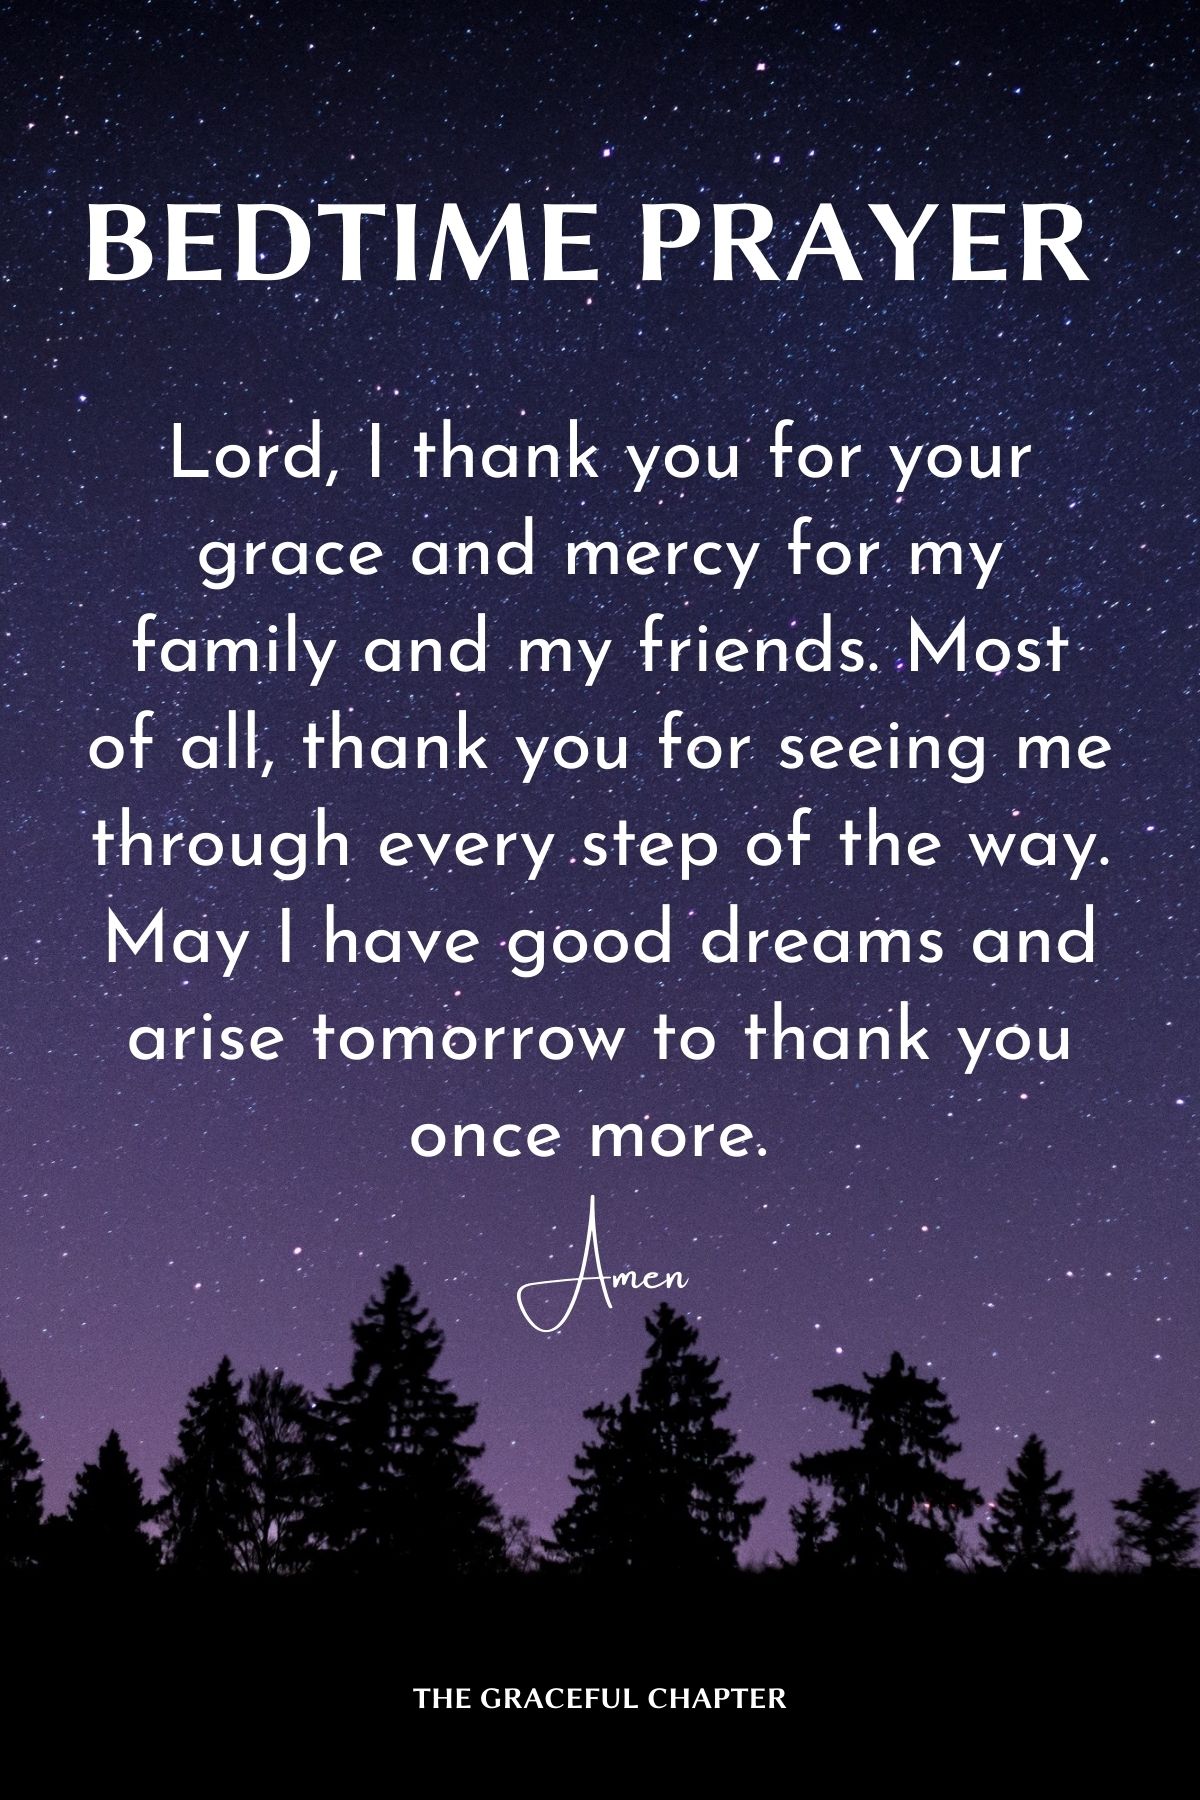 Bedtime prayer of thanks